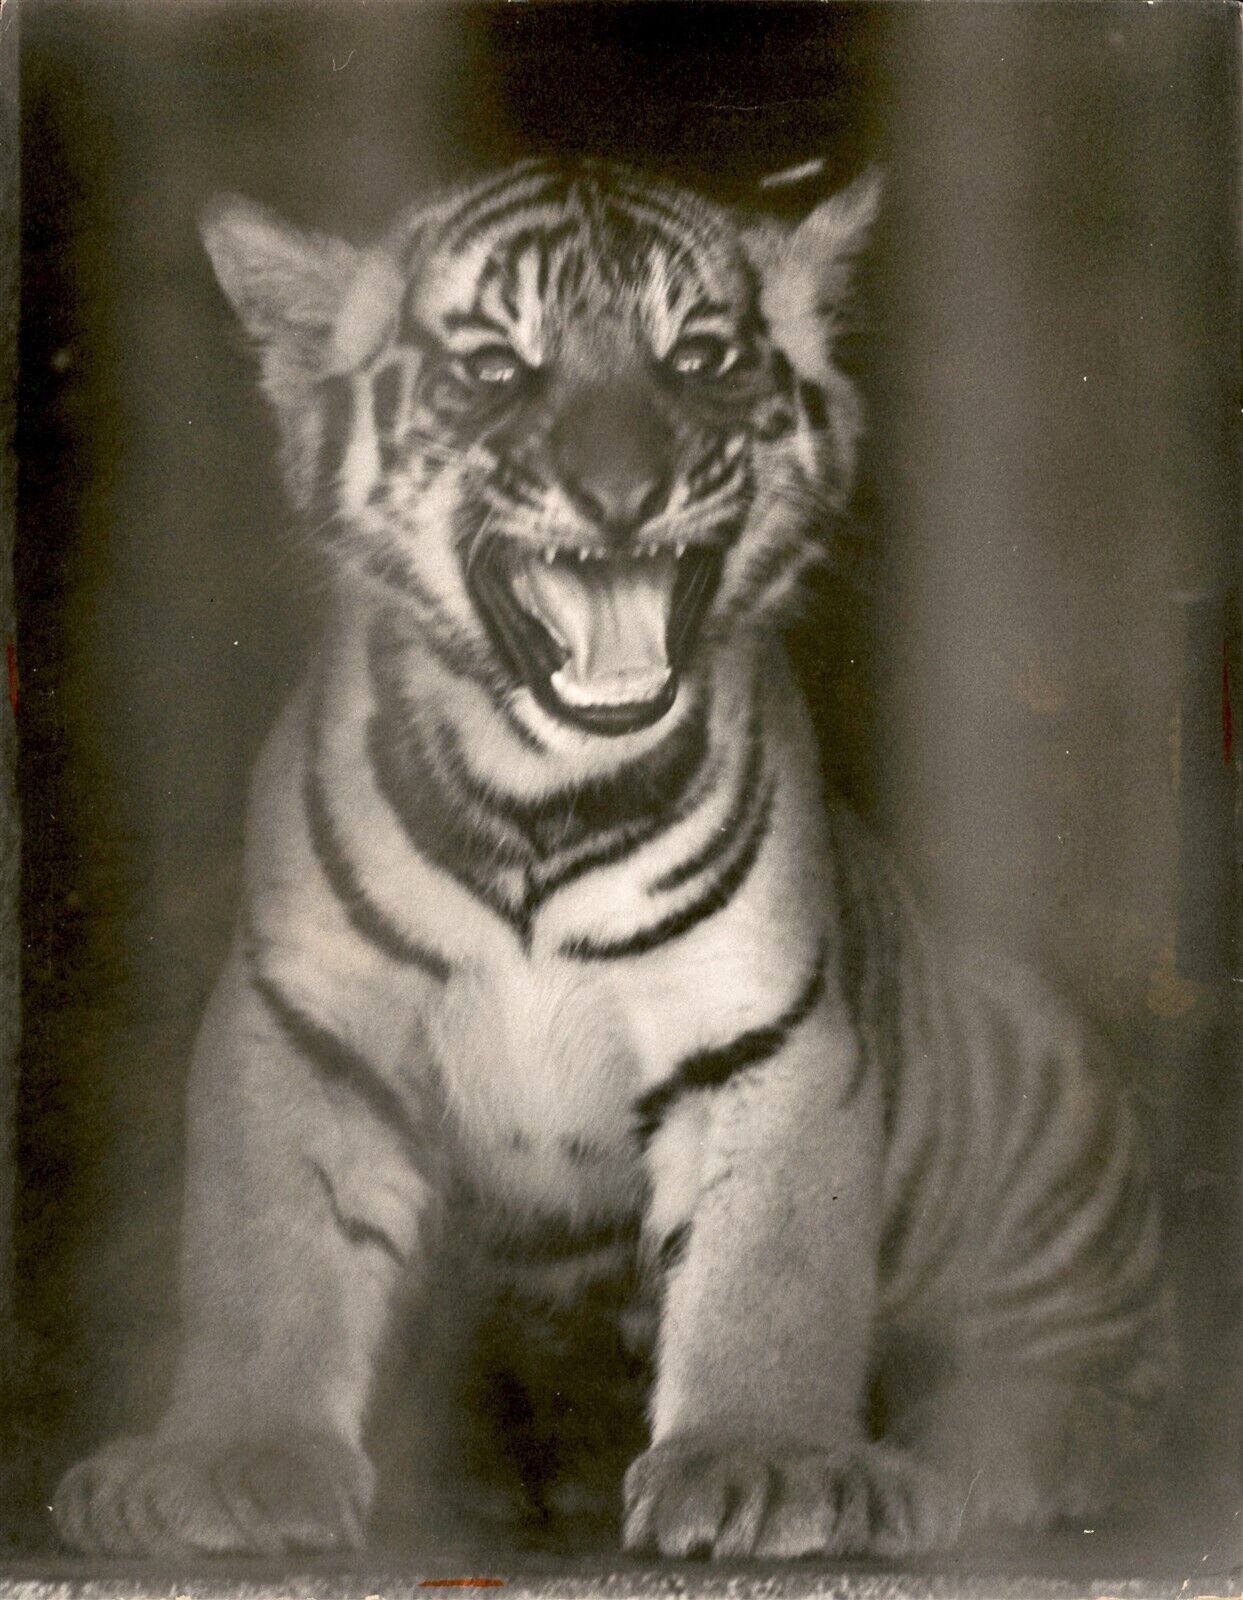 LG81 1968 Orig Gus Schuettler Photo BABY TIGER CUB Crandon Zoo Adorable Animal